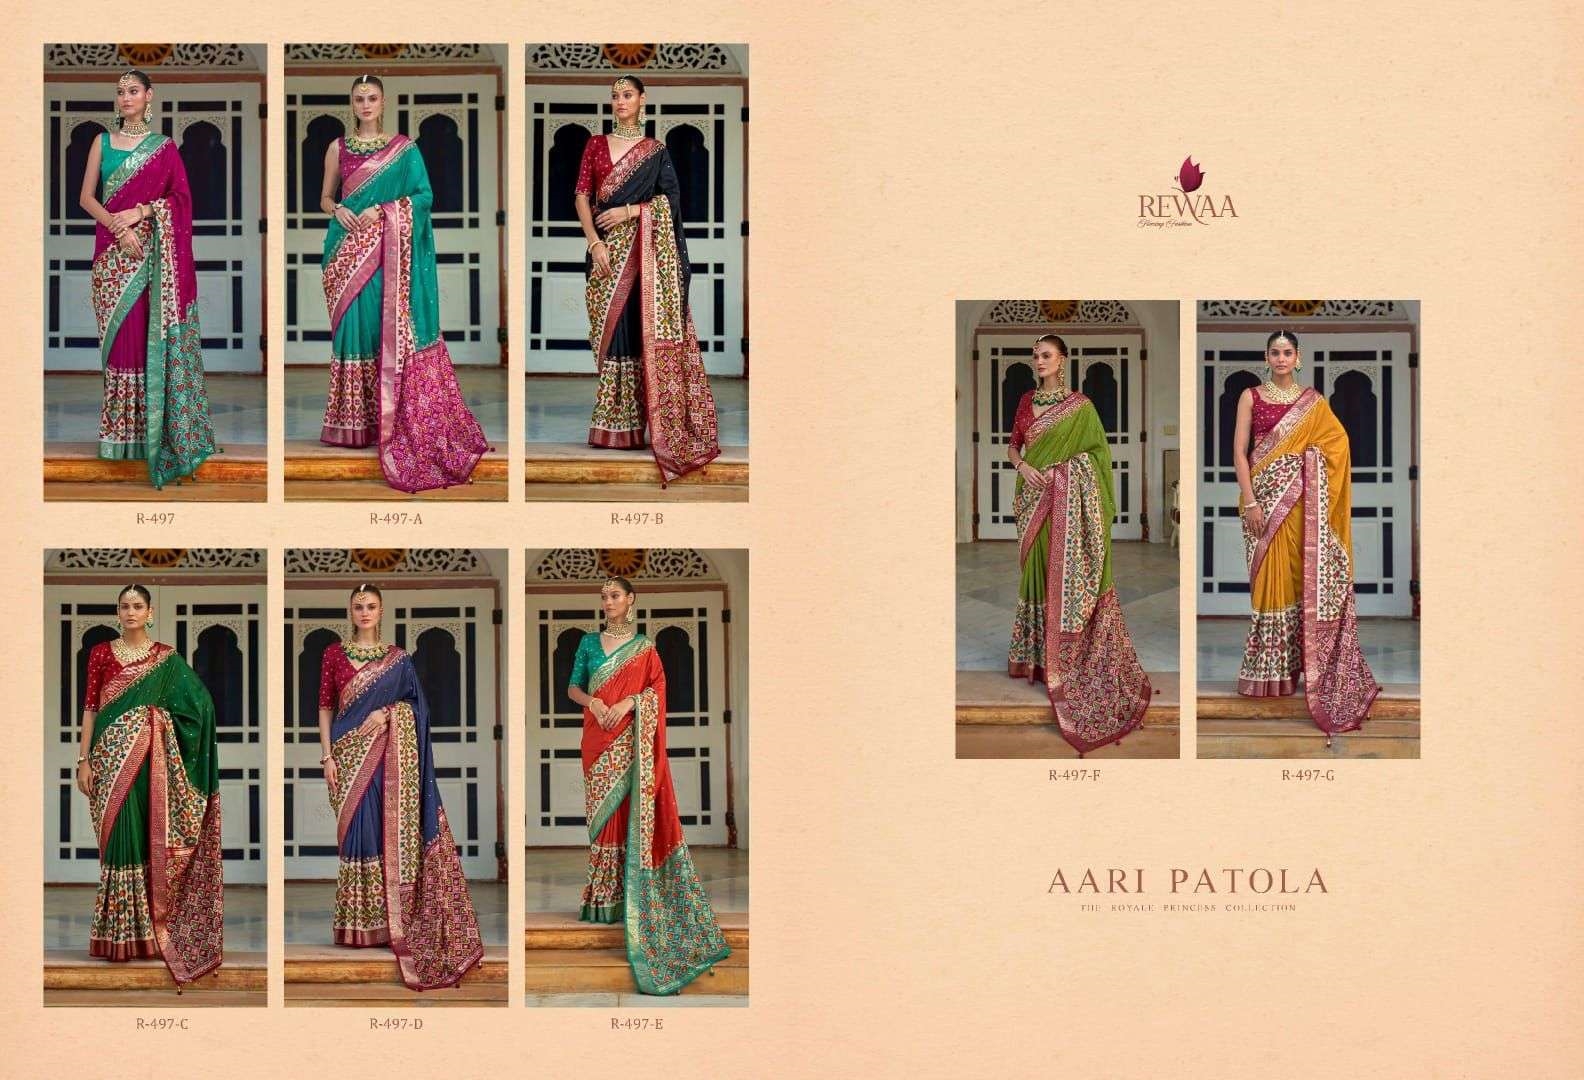 Rewaa Aari Patola collection 8